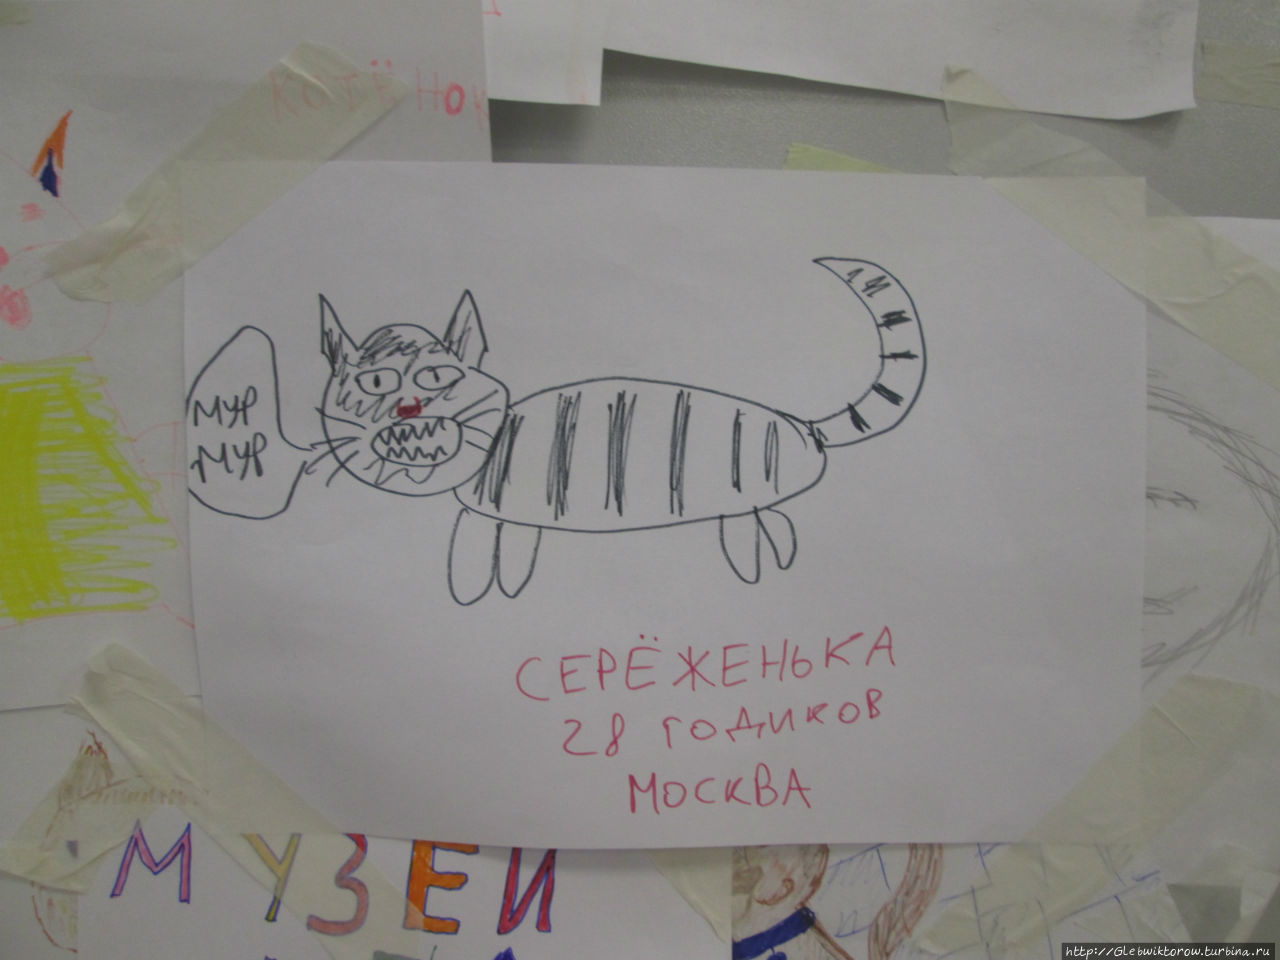 Музей кота Минск, Беларусь